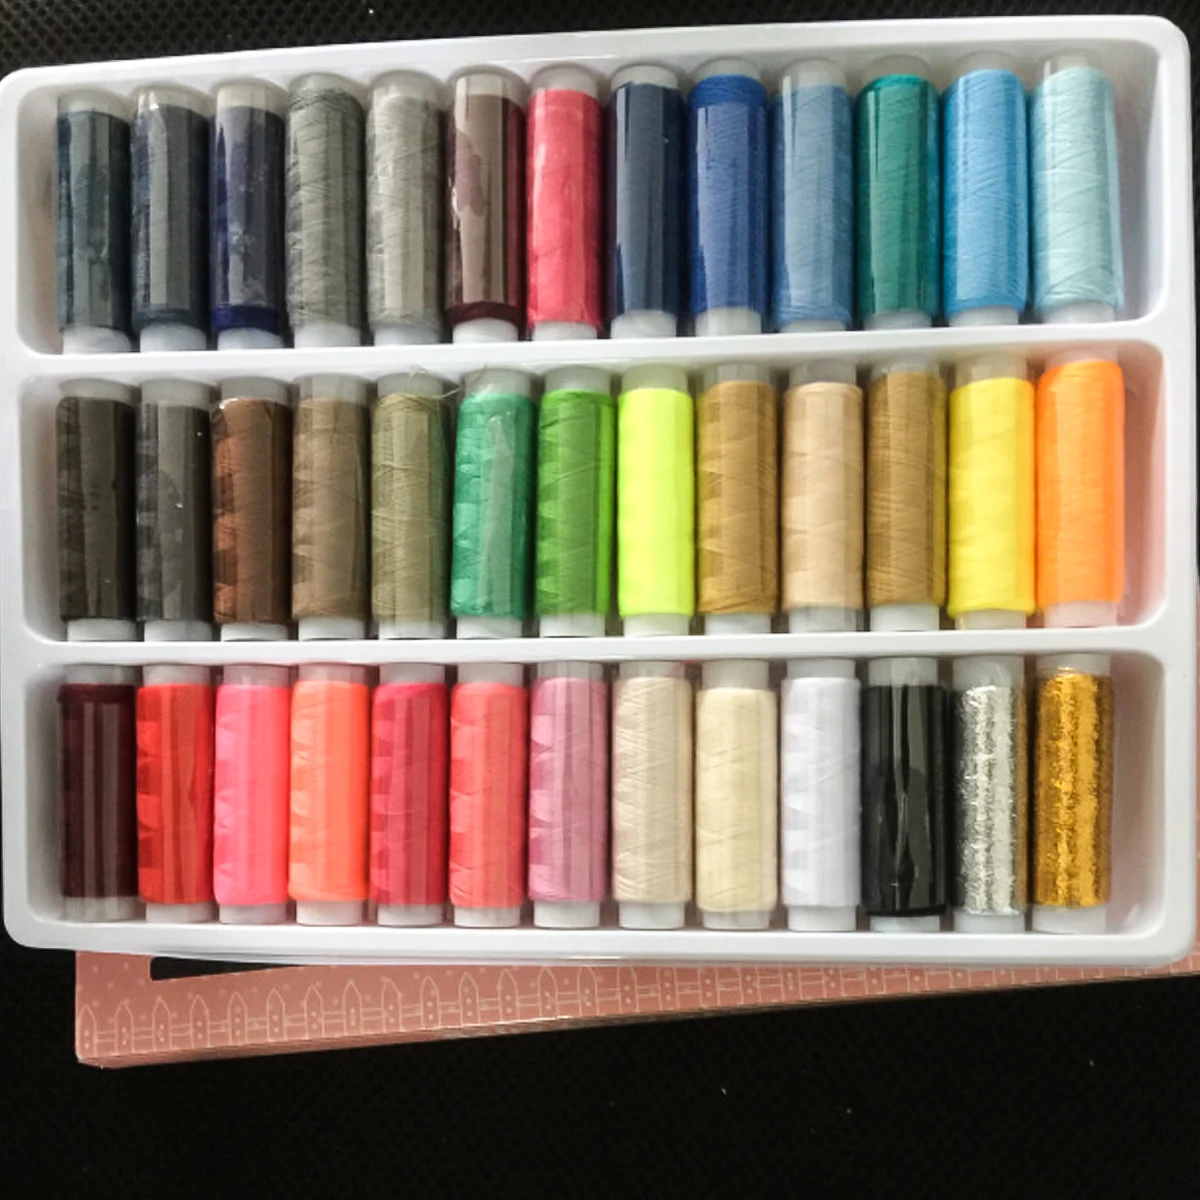 

39 вида разного цвета швейных ниток катушка комплект нитки для ручного шитья для одежды шить простыней накладки и другие художественные про...